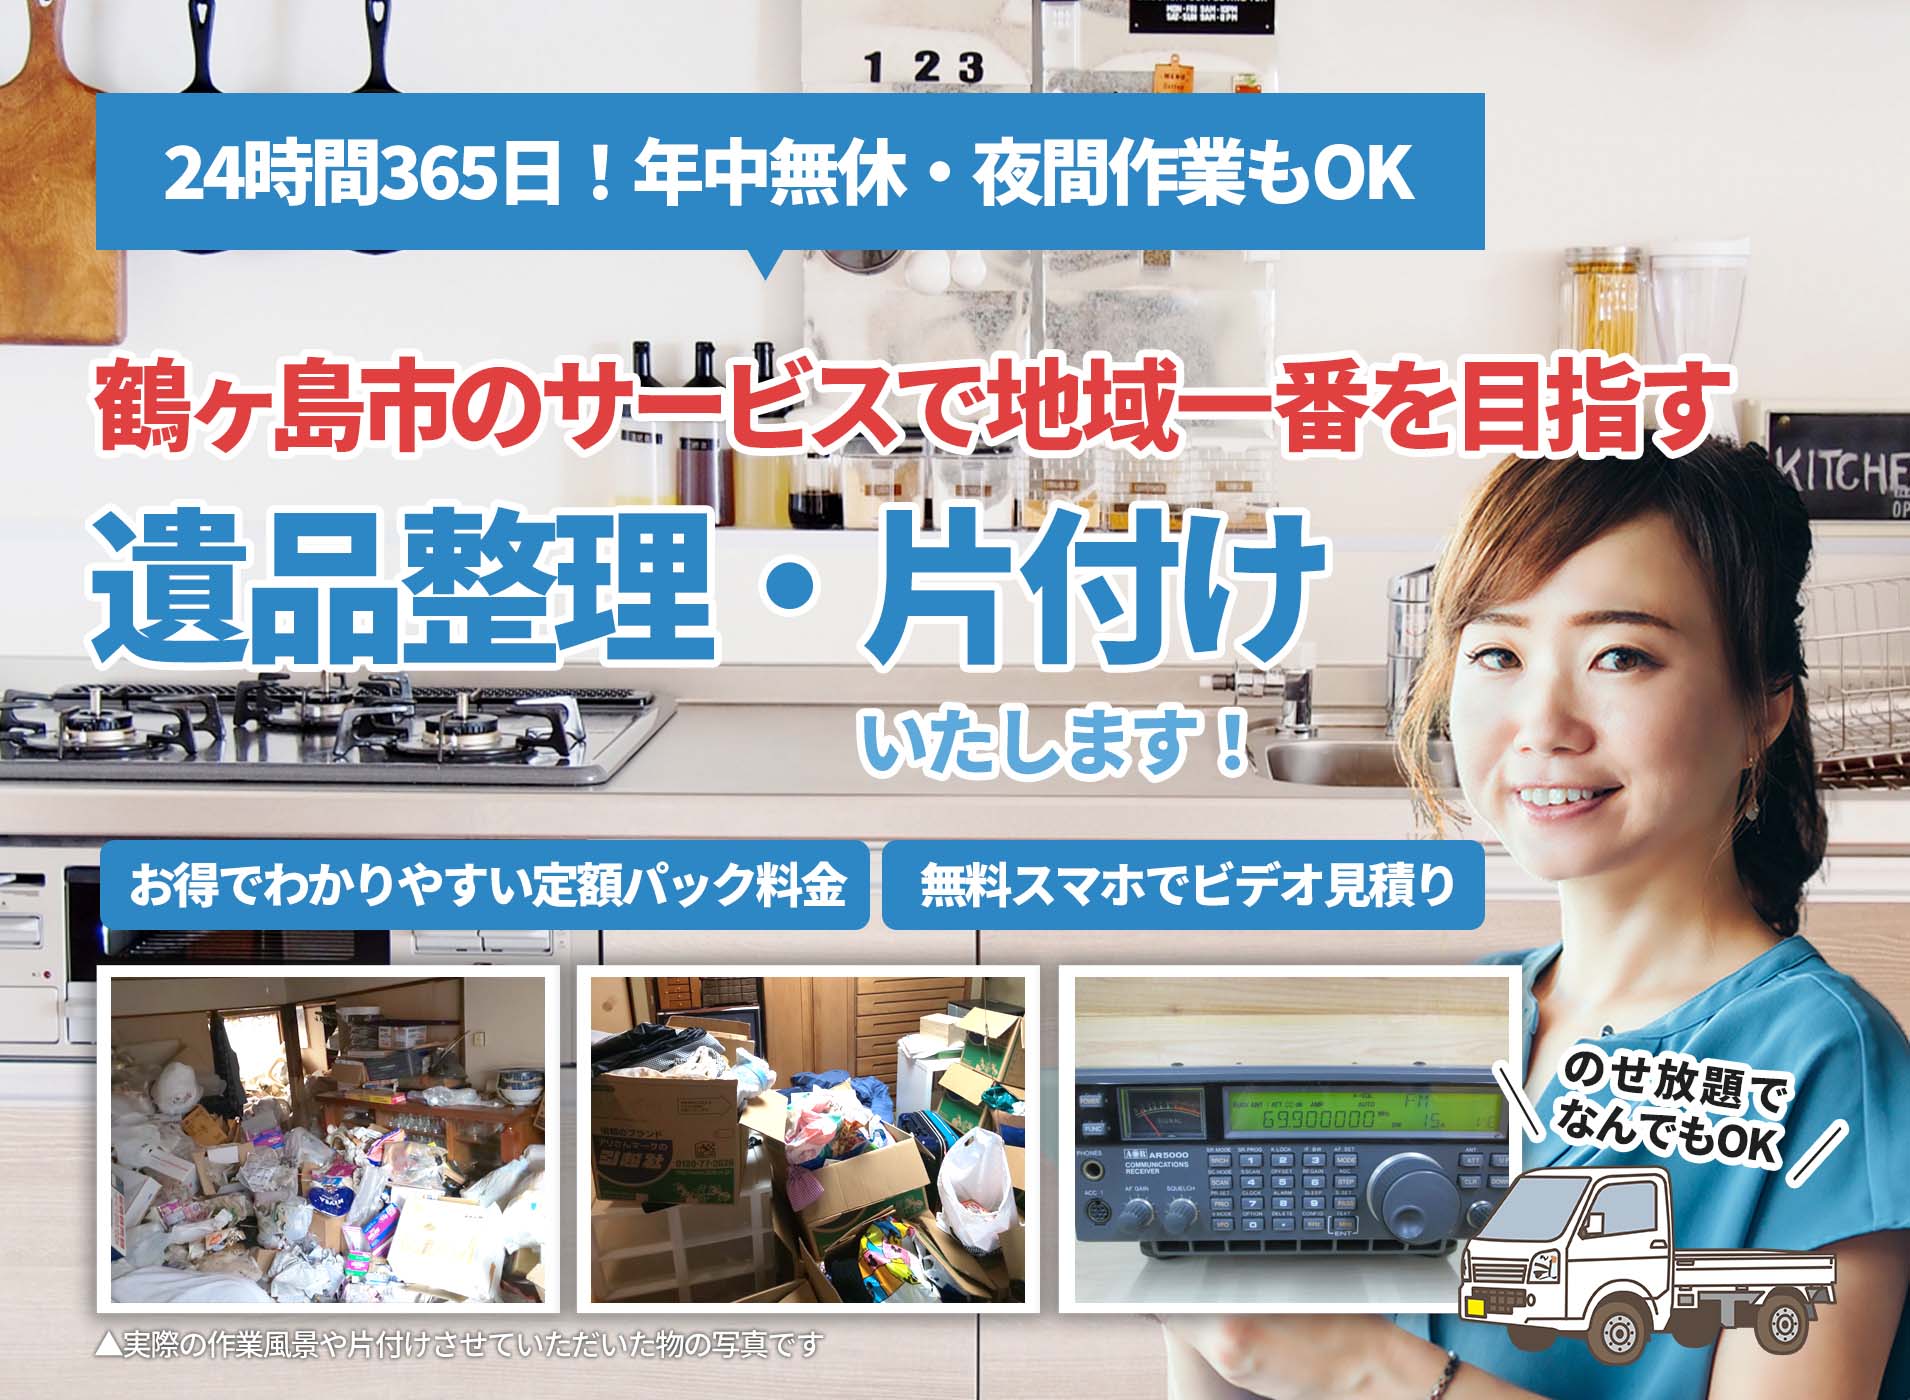 鶴ヶ島市のサービスで地域一番を目指すＬＴＪ遺品整理隊の遺品整理サービス